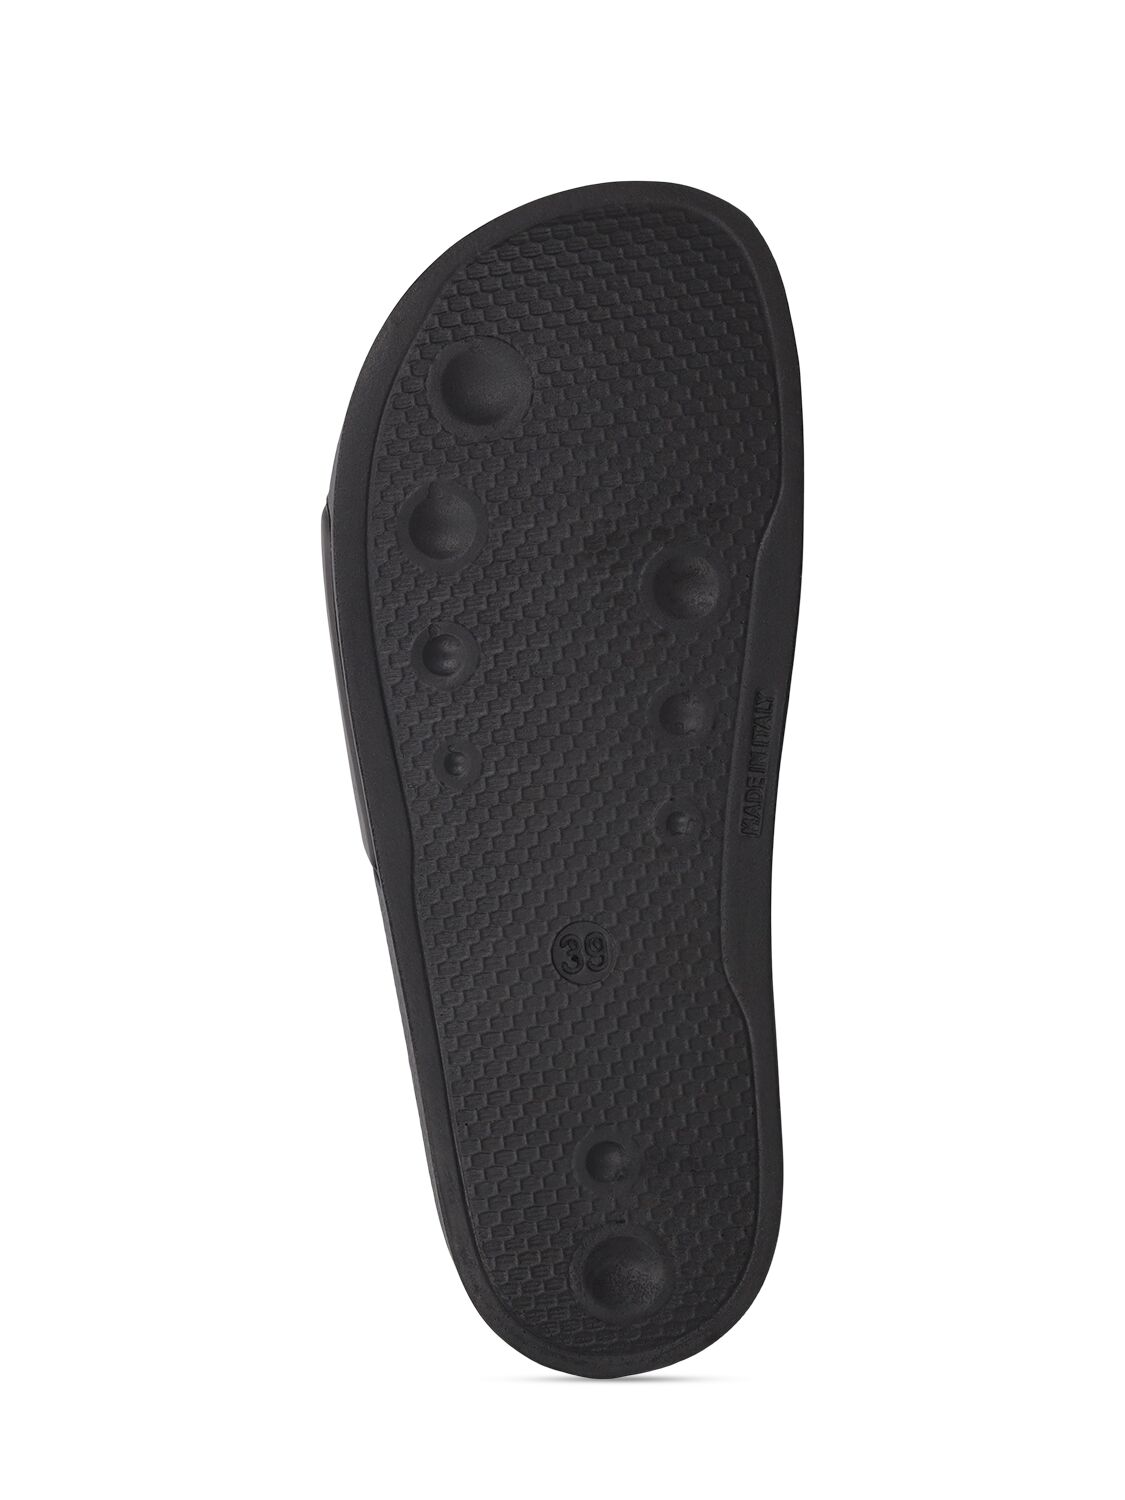 Shop Msgm 15mm Rubber Pool Slide Sandals In Black